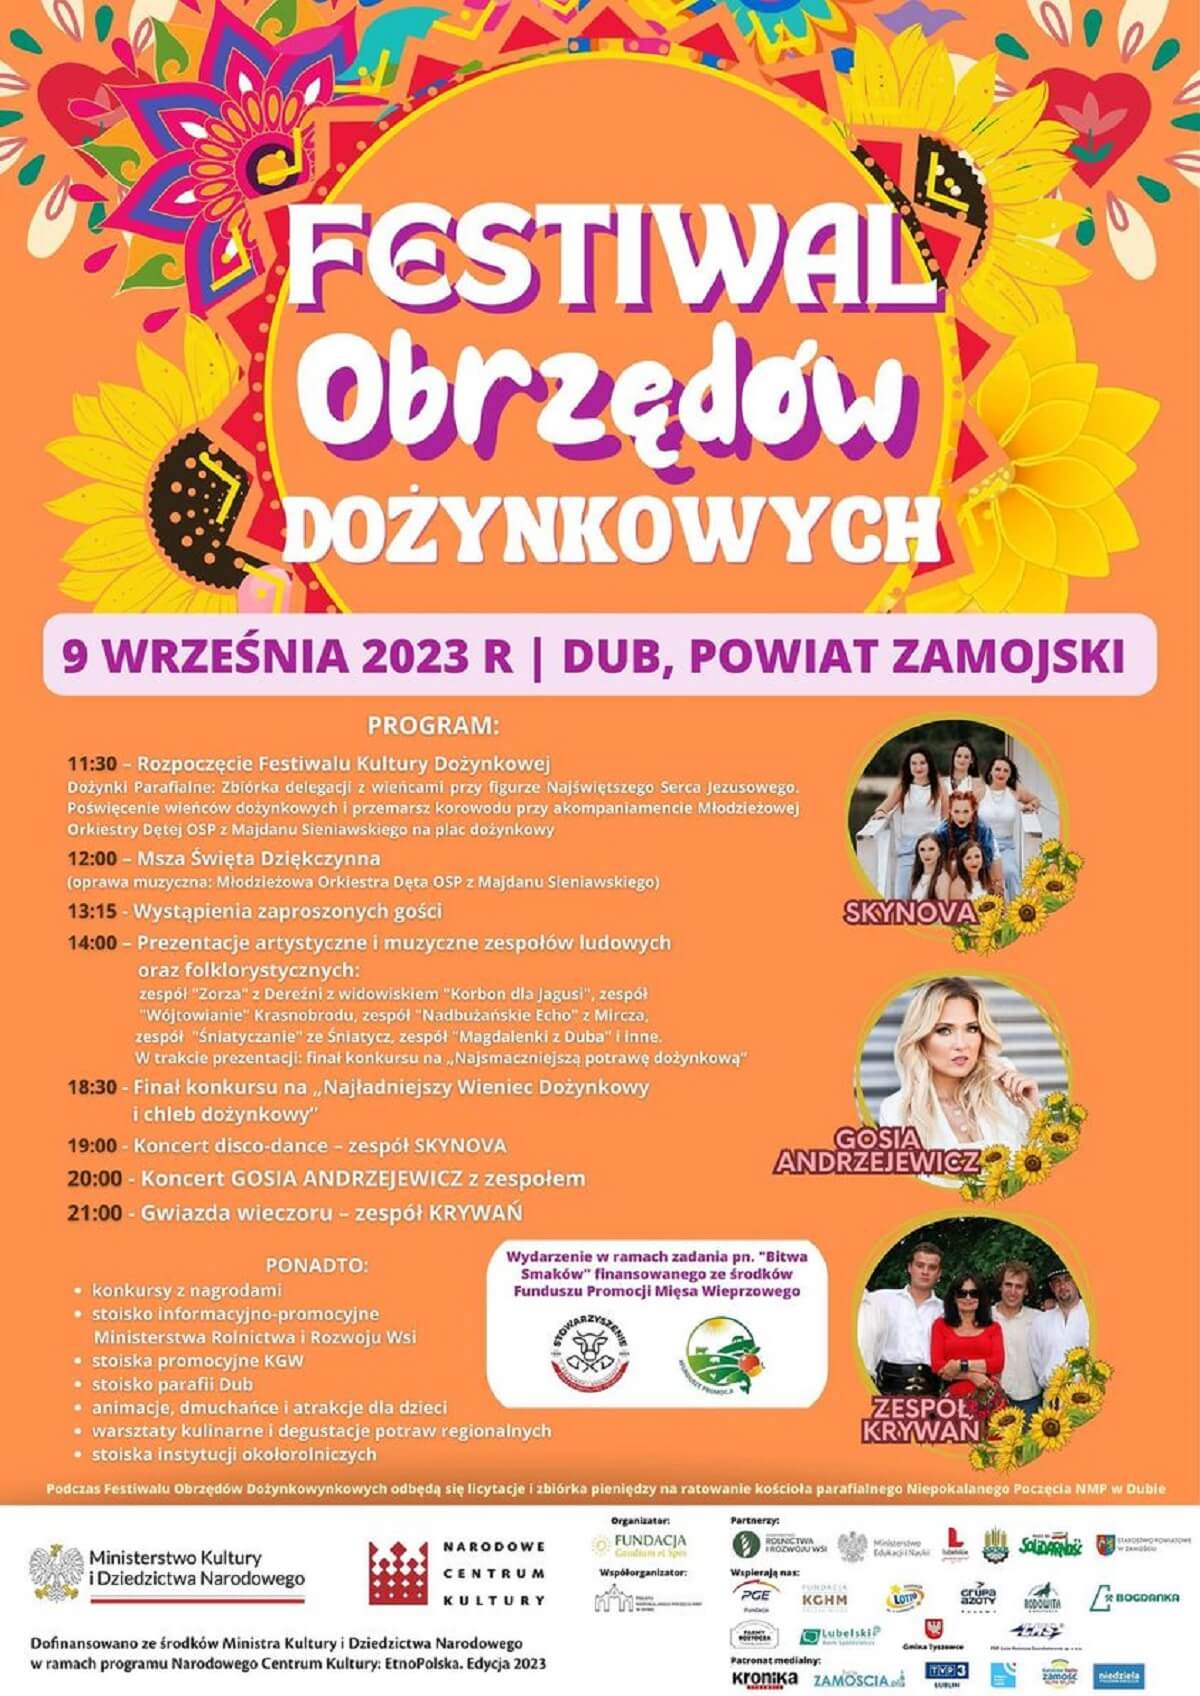 Festiwal Obrzędów Dożynkowych w Dubie 2023 - plakat, program wydarzenia